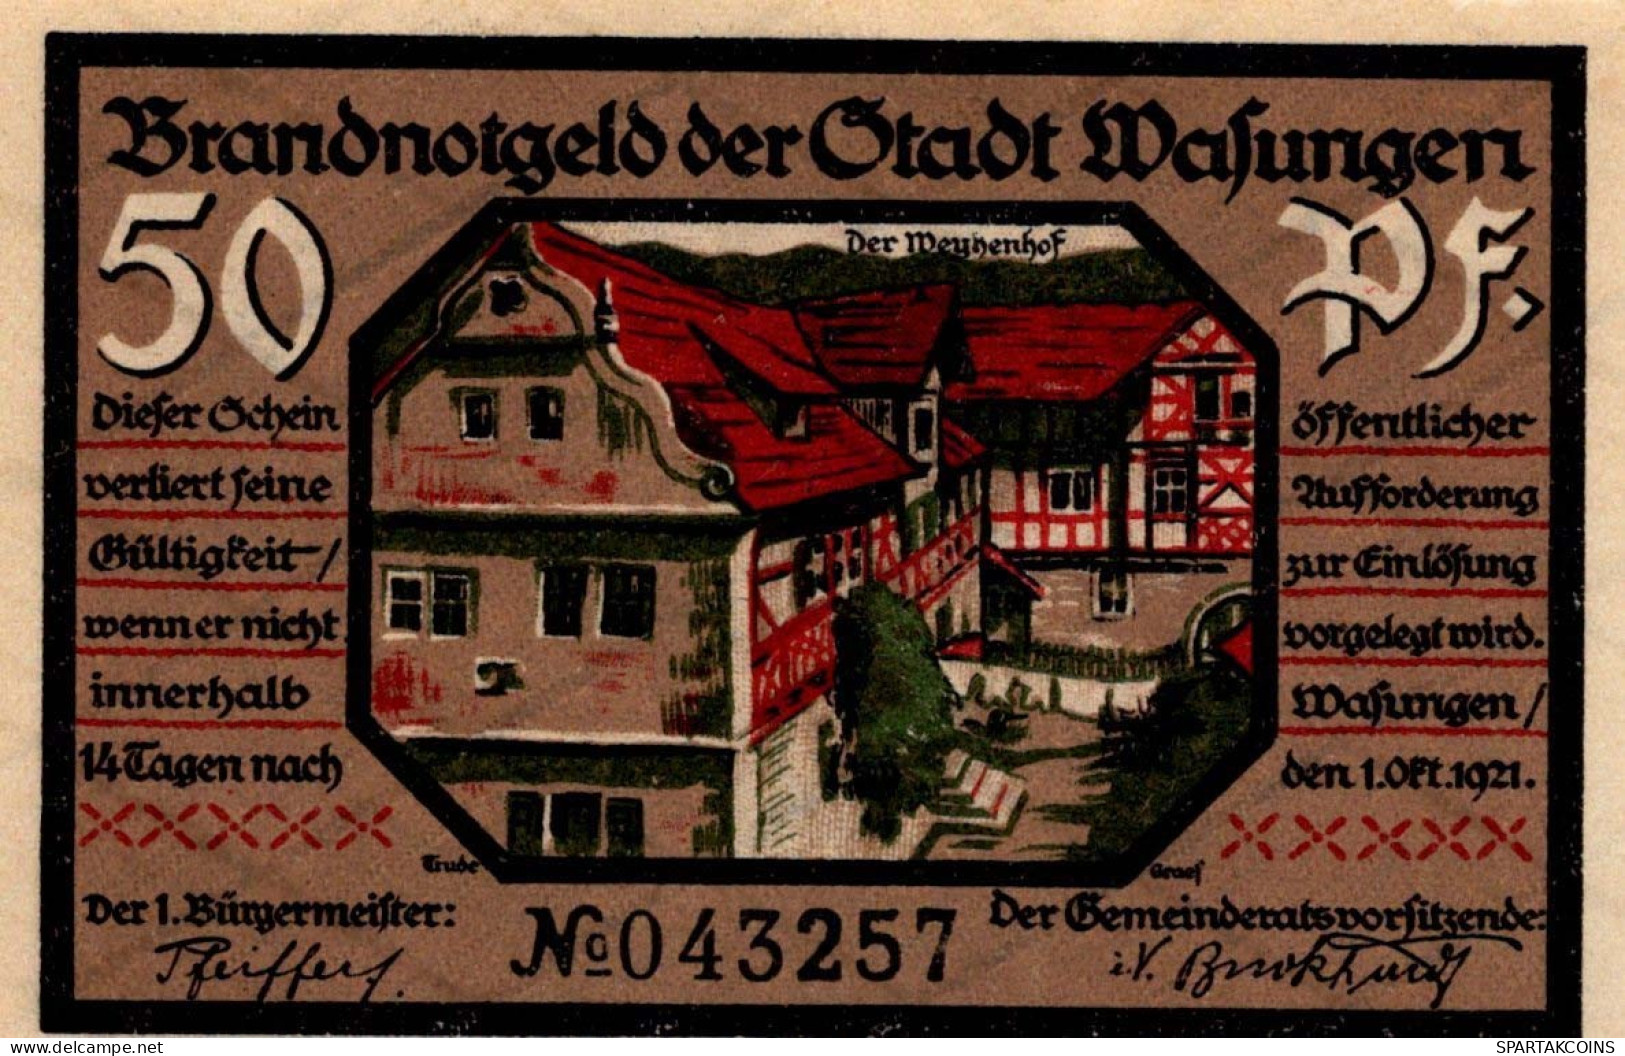 50 PFENNIG 1921 Stadt WASUNGEN Thuringia UNC DEUTSCHLAND Notgeld Banknote #PH911 - [11] Local Banknote Issues